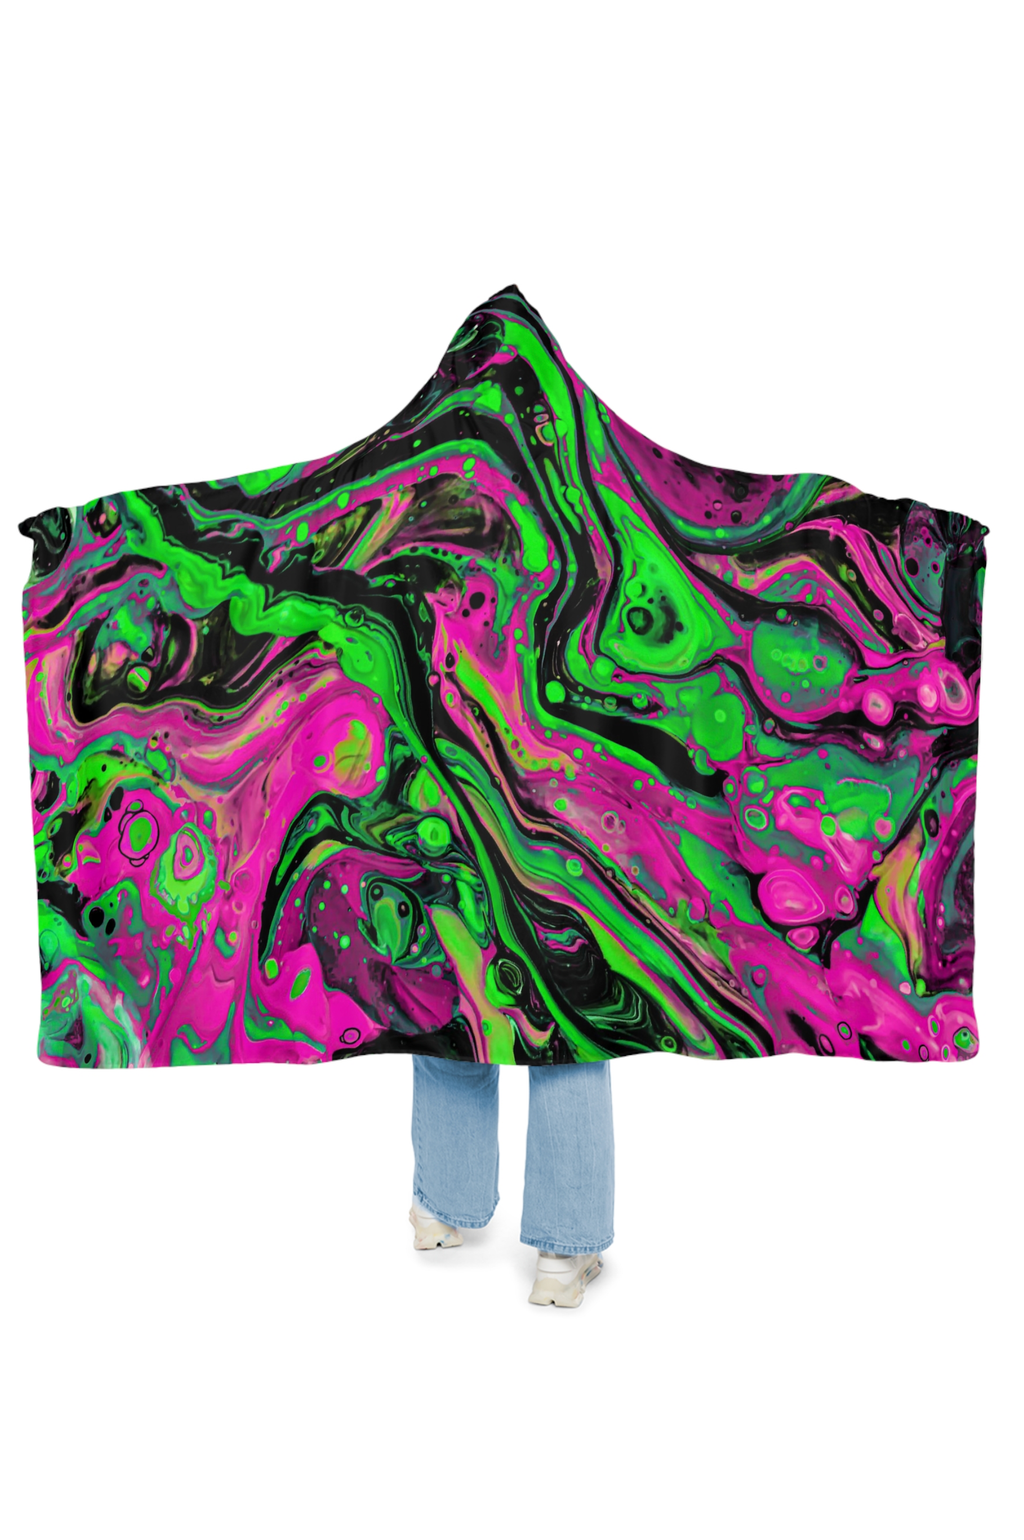 Acid Attack Hooded Blanket (Made to Order) - Acid Waves